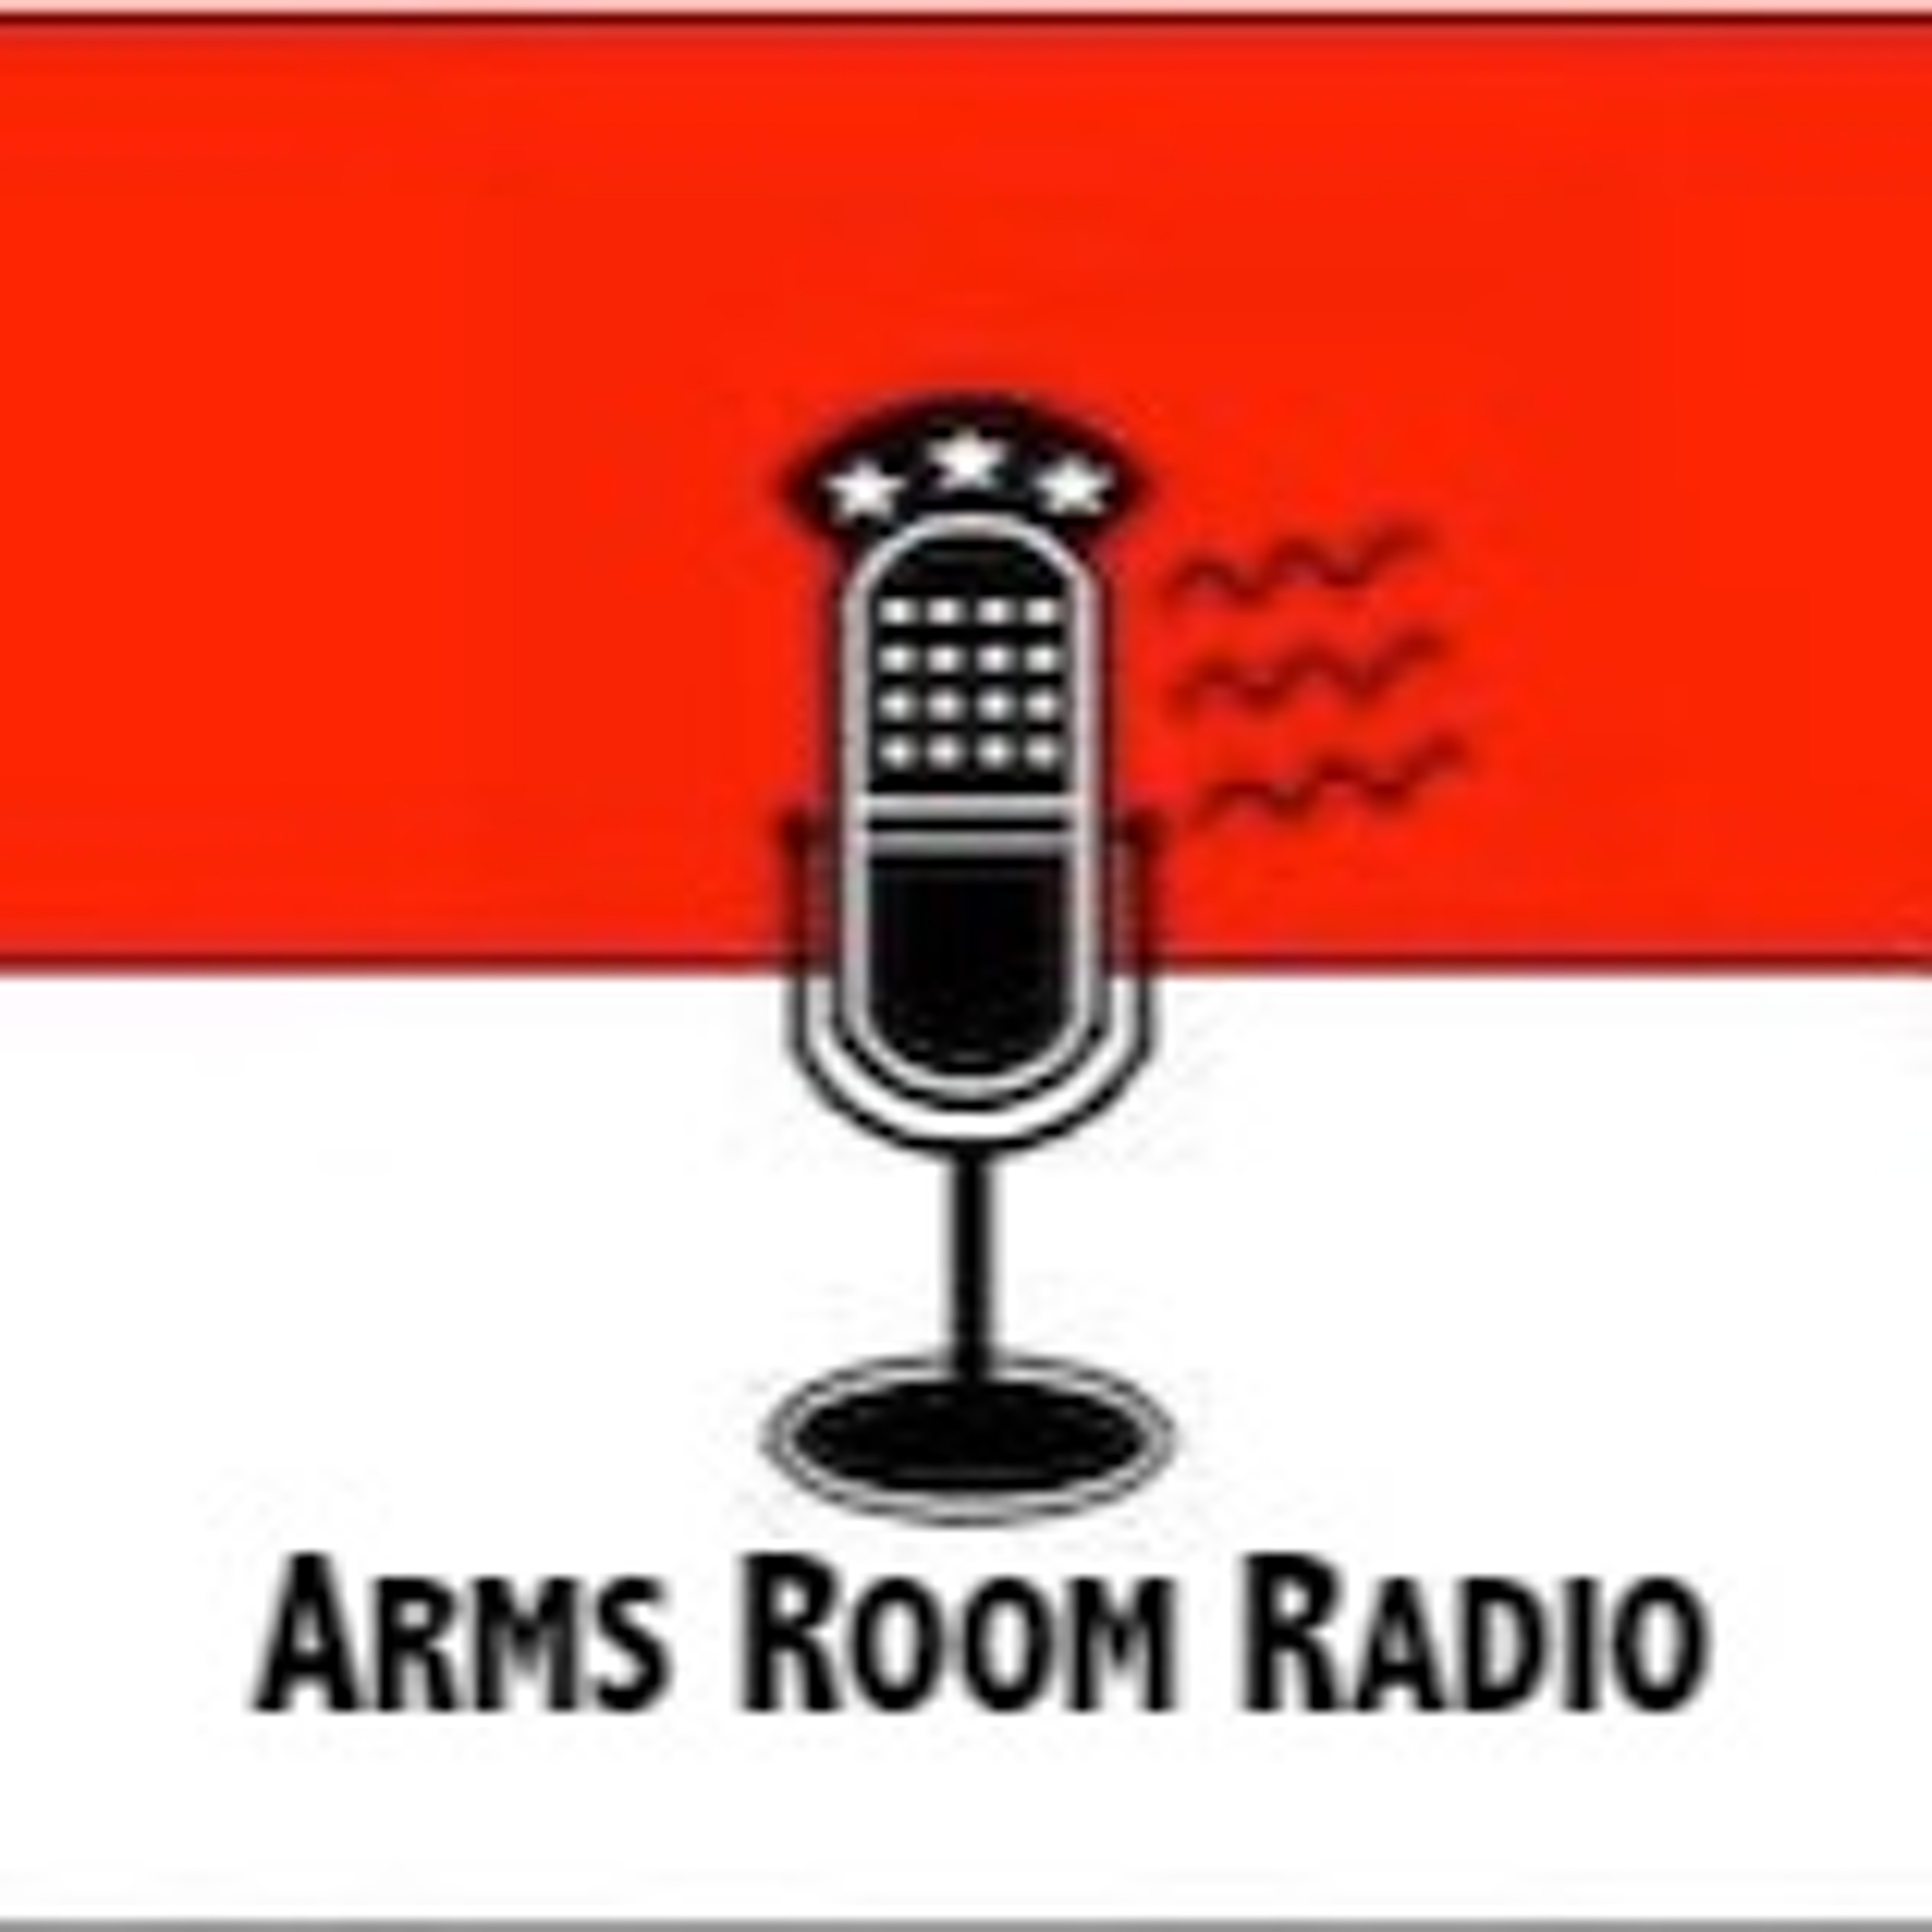 ArmsRoomRadio 01.18.20 Dr. John Edeen, Virginia updates